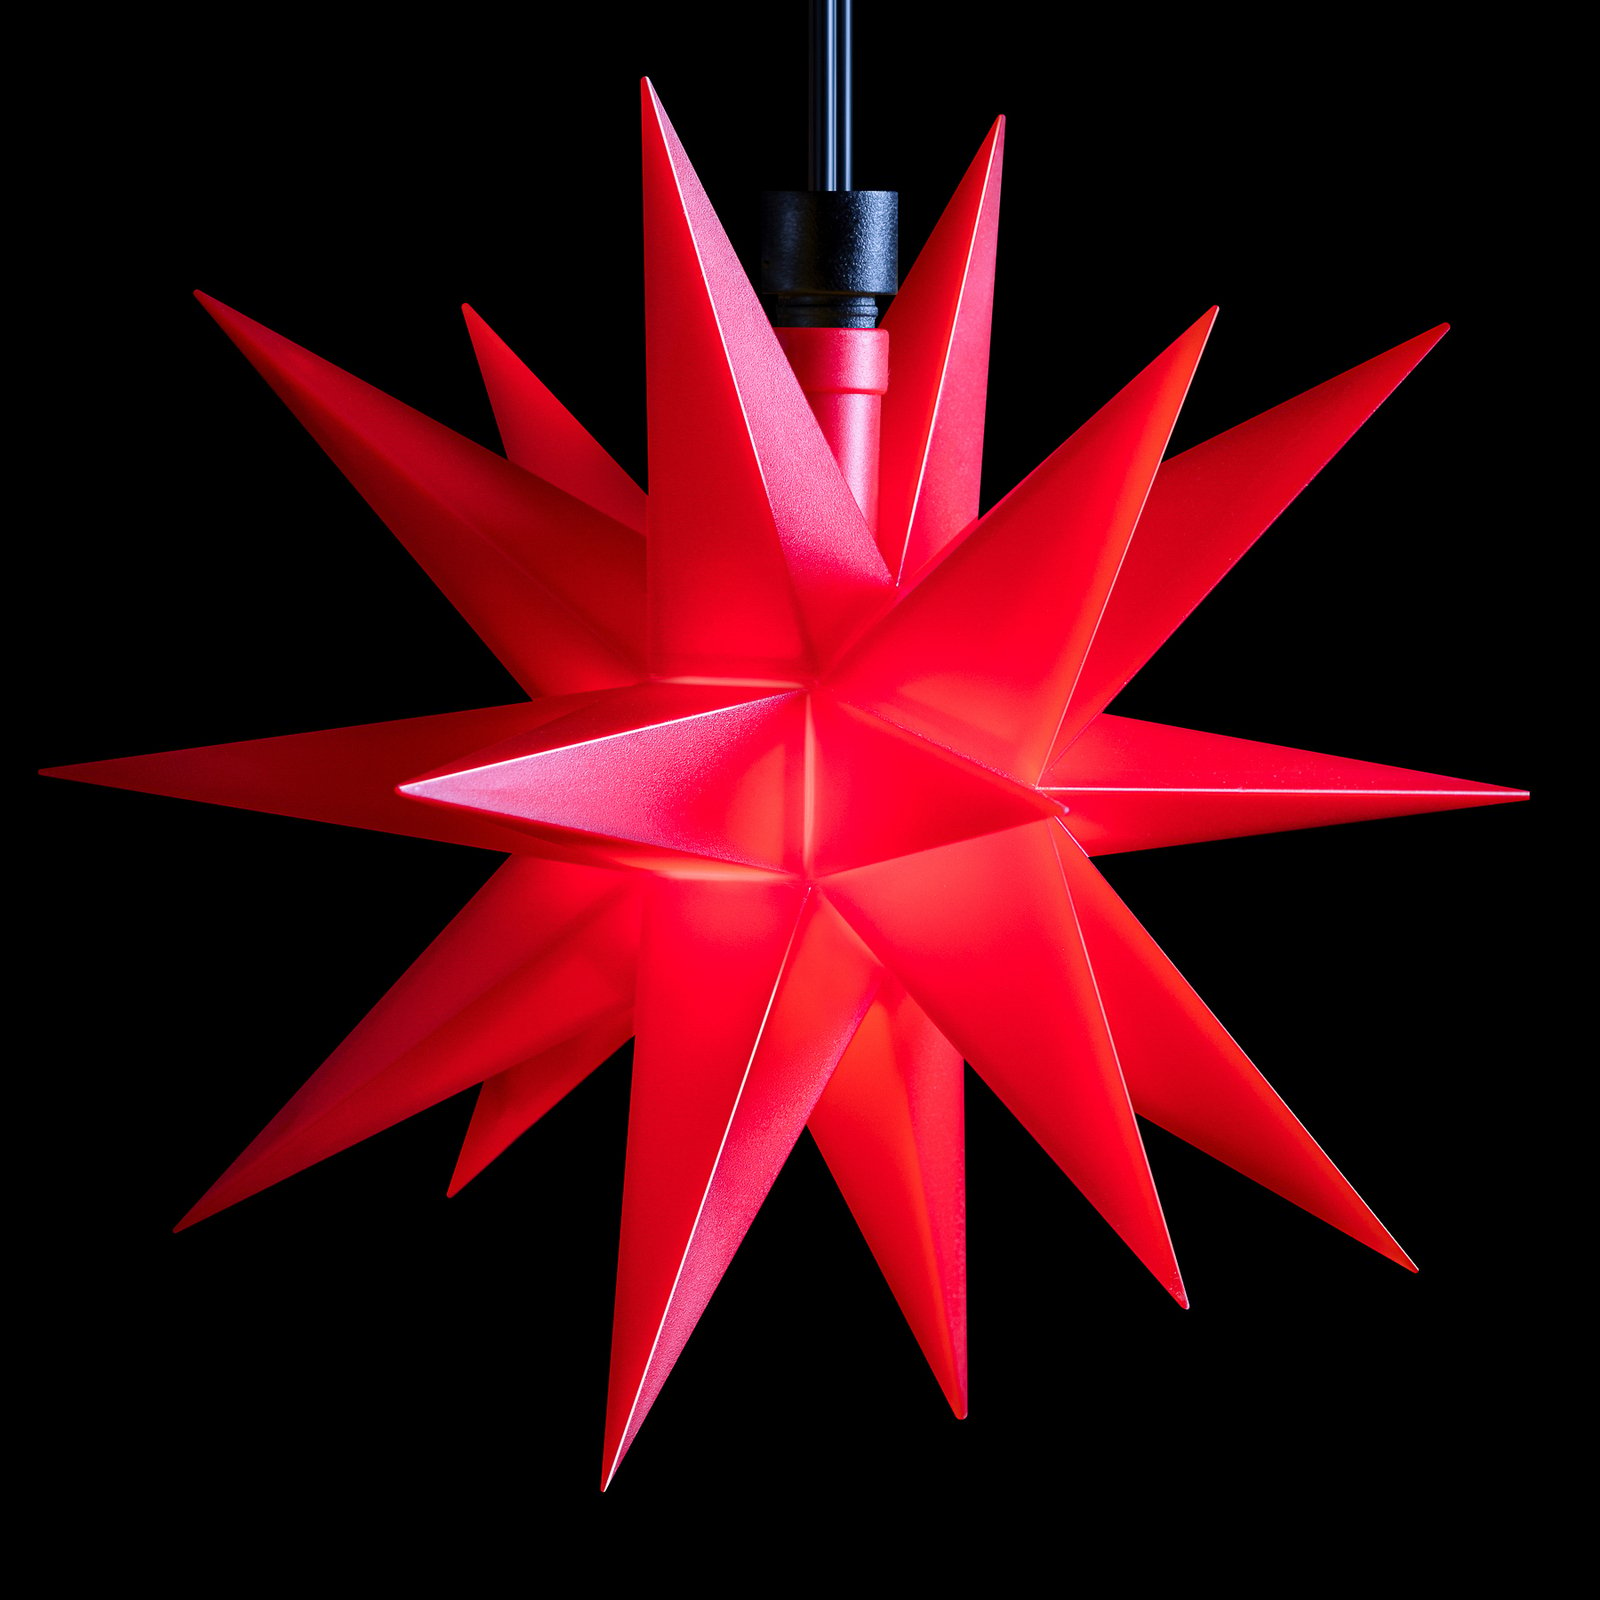 Guirlande LED mini-étoiles à 3 lampes rouge